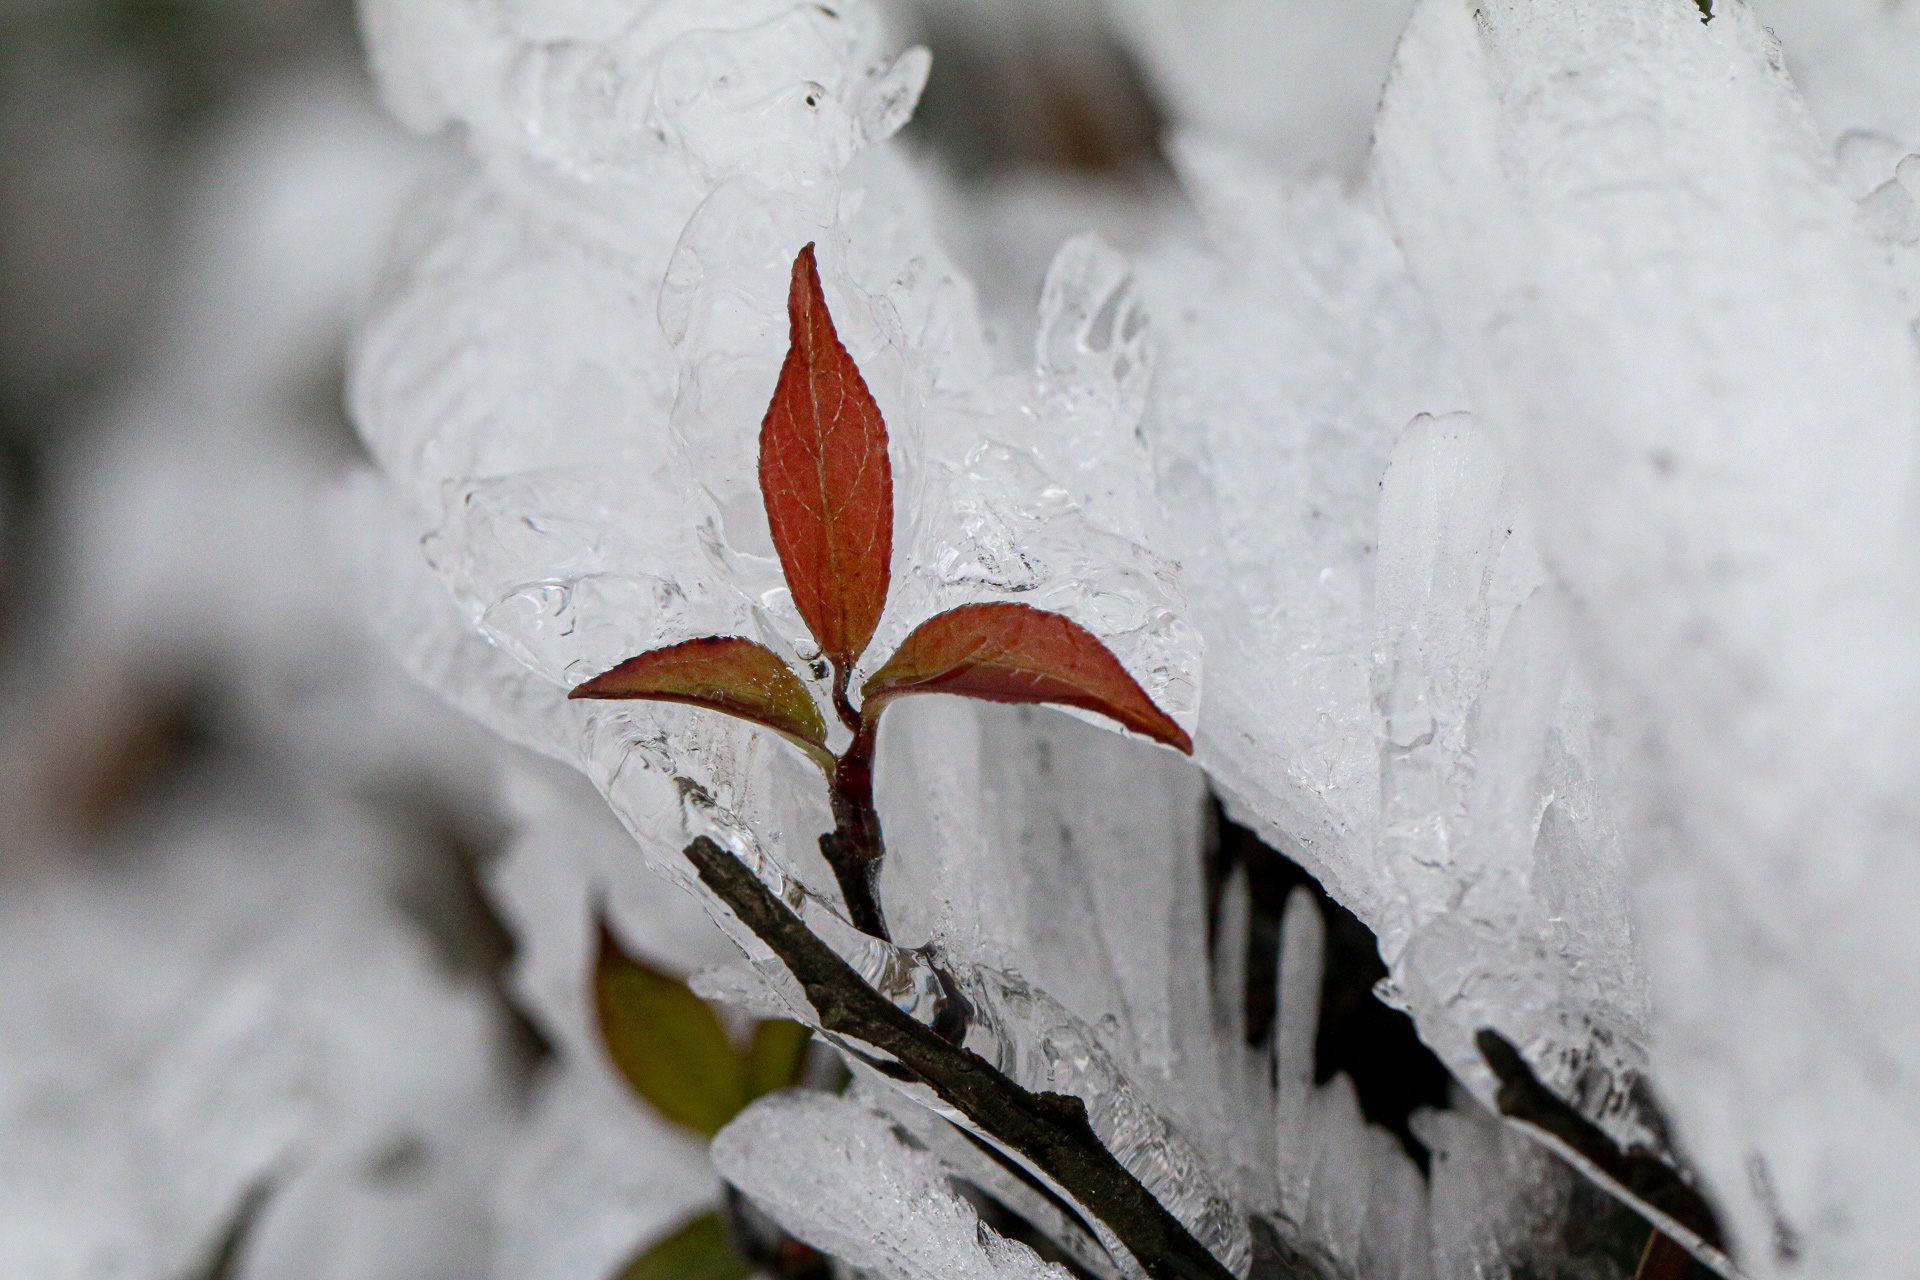 ẢNH: Khoảnh khắc băng giá đọng trên cây ngày rét 0 độ C - Ảnh 11.